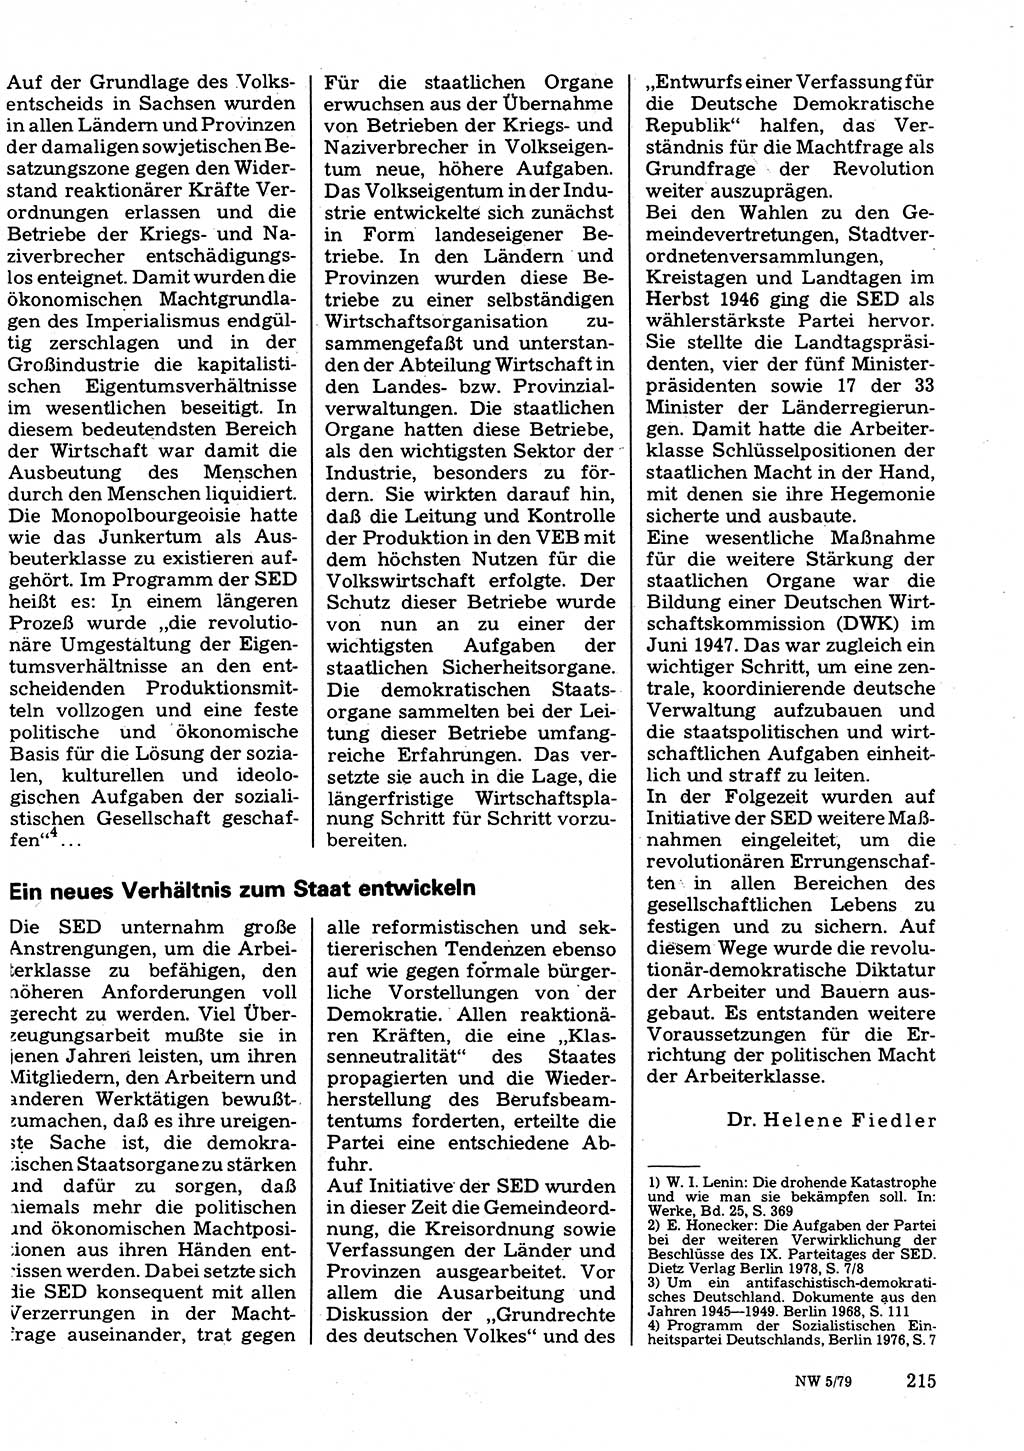 Neuer Weg (NW), Organ des Zentralkomitees (ZK) der SED (Sozialistische Einheitspartei Deutschlands) für Fragen des Parteilebens, 34. Jahrgang [Deutsche Demokratische Republik (DDR)] 1979, Seite 215 (NW ZK SED DDR 1979, S. 215)